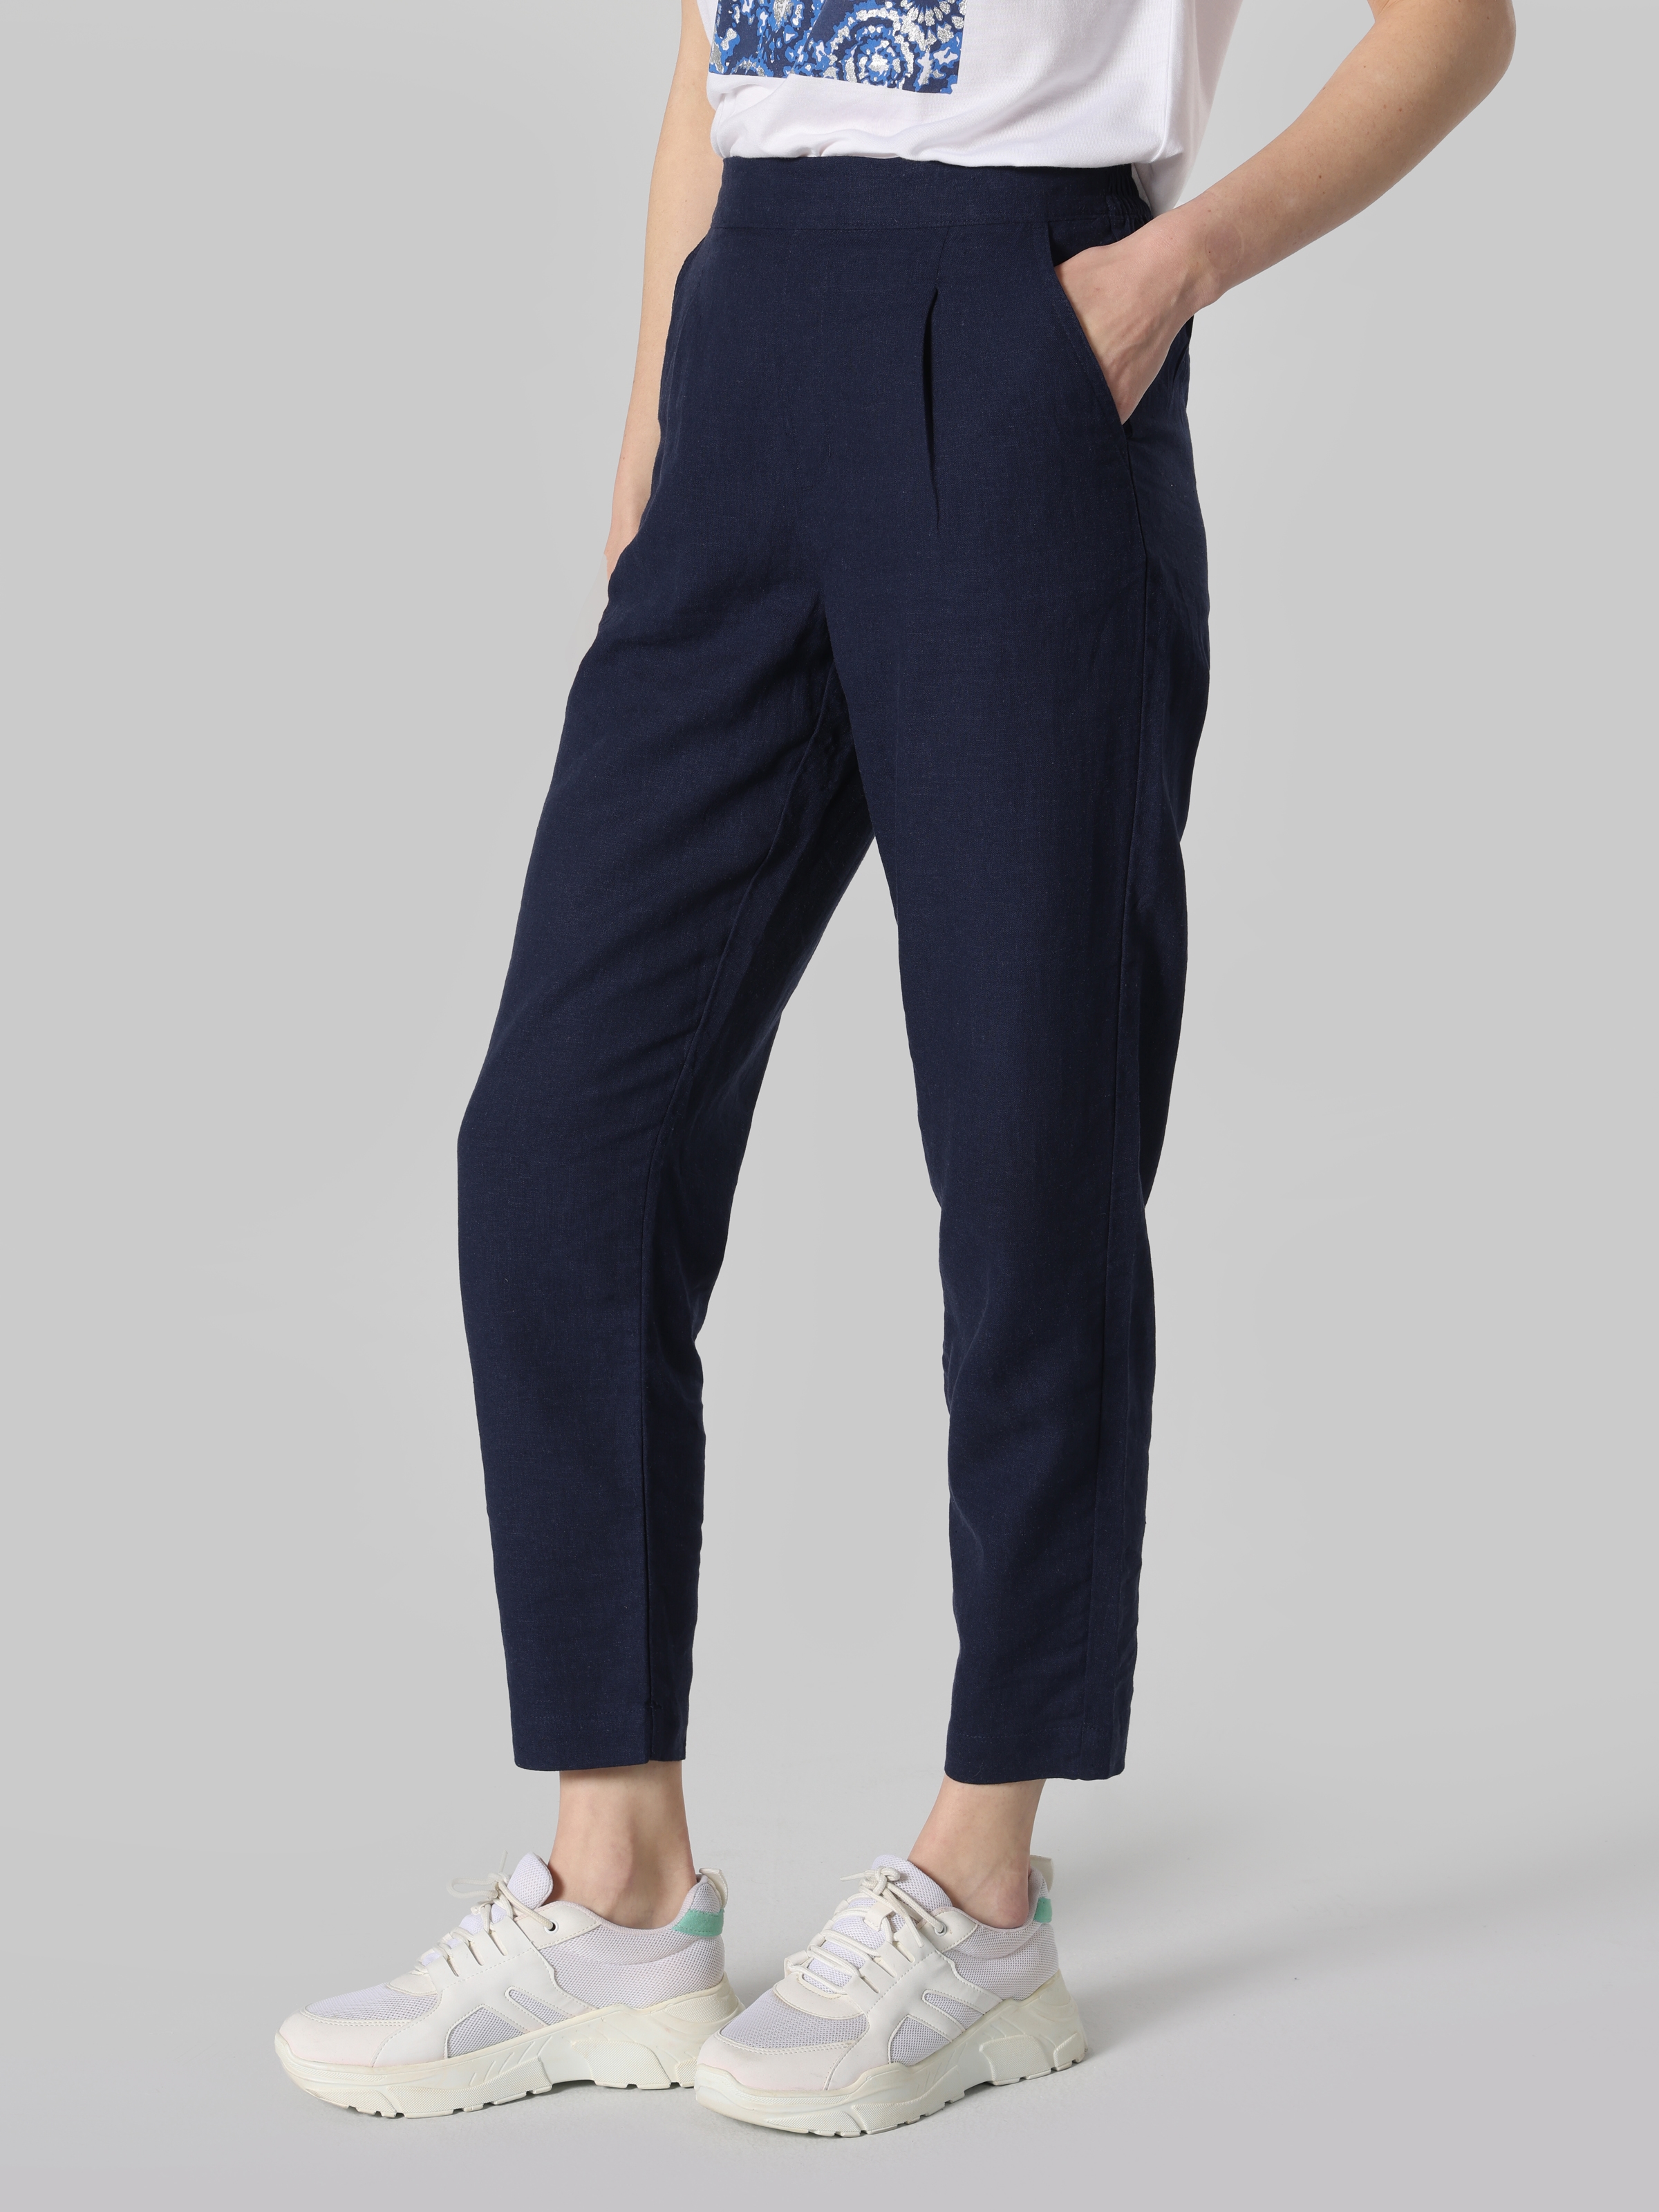 Afficher les détails de Pantalon Femme Bleu Marine Coupe Normale Taille Basse Jambe Droite